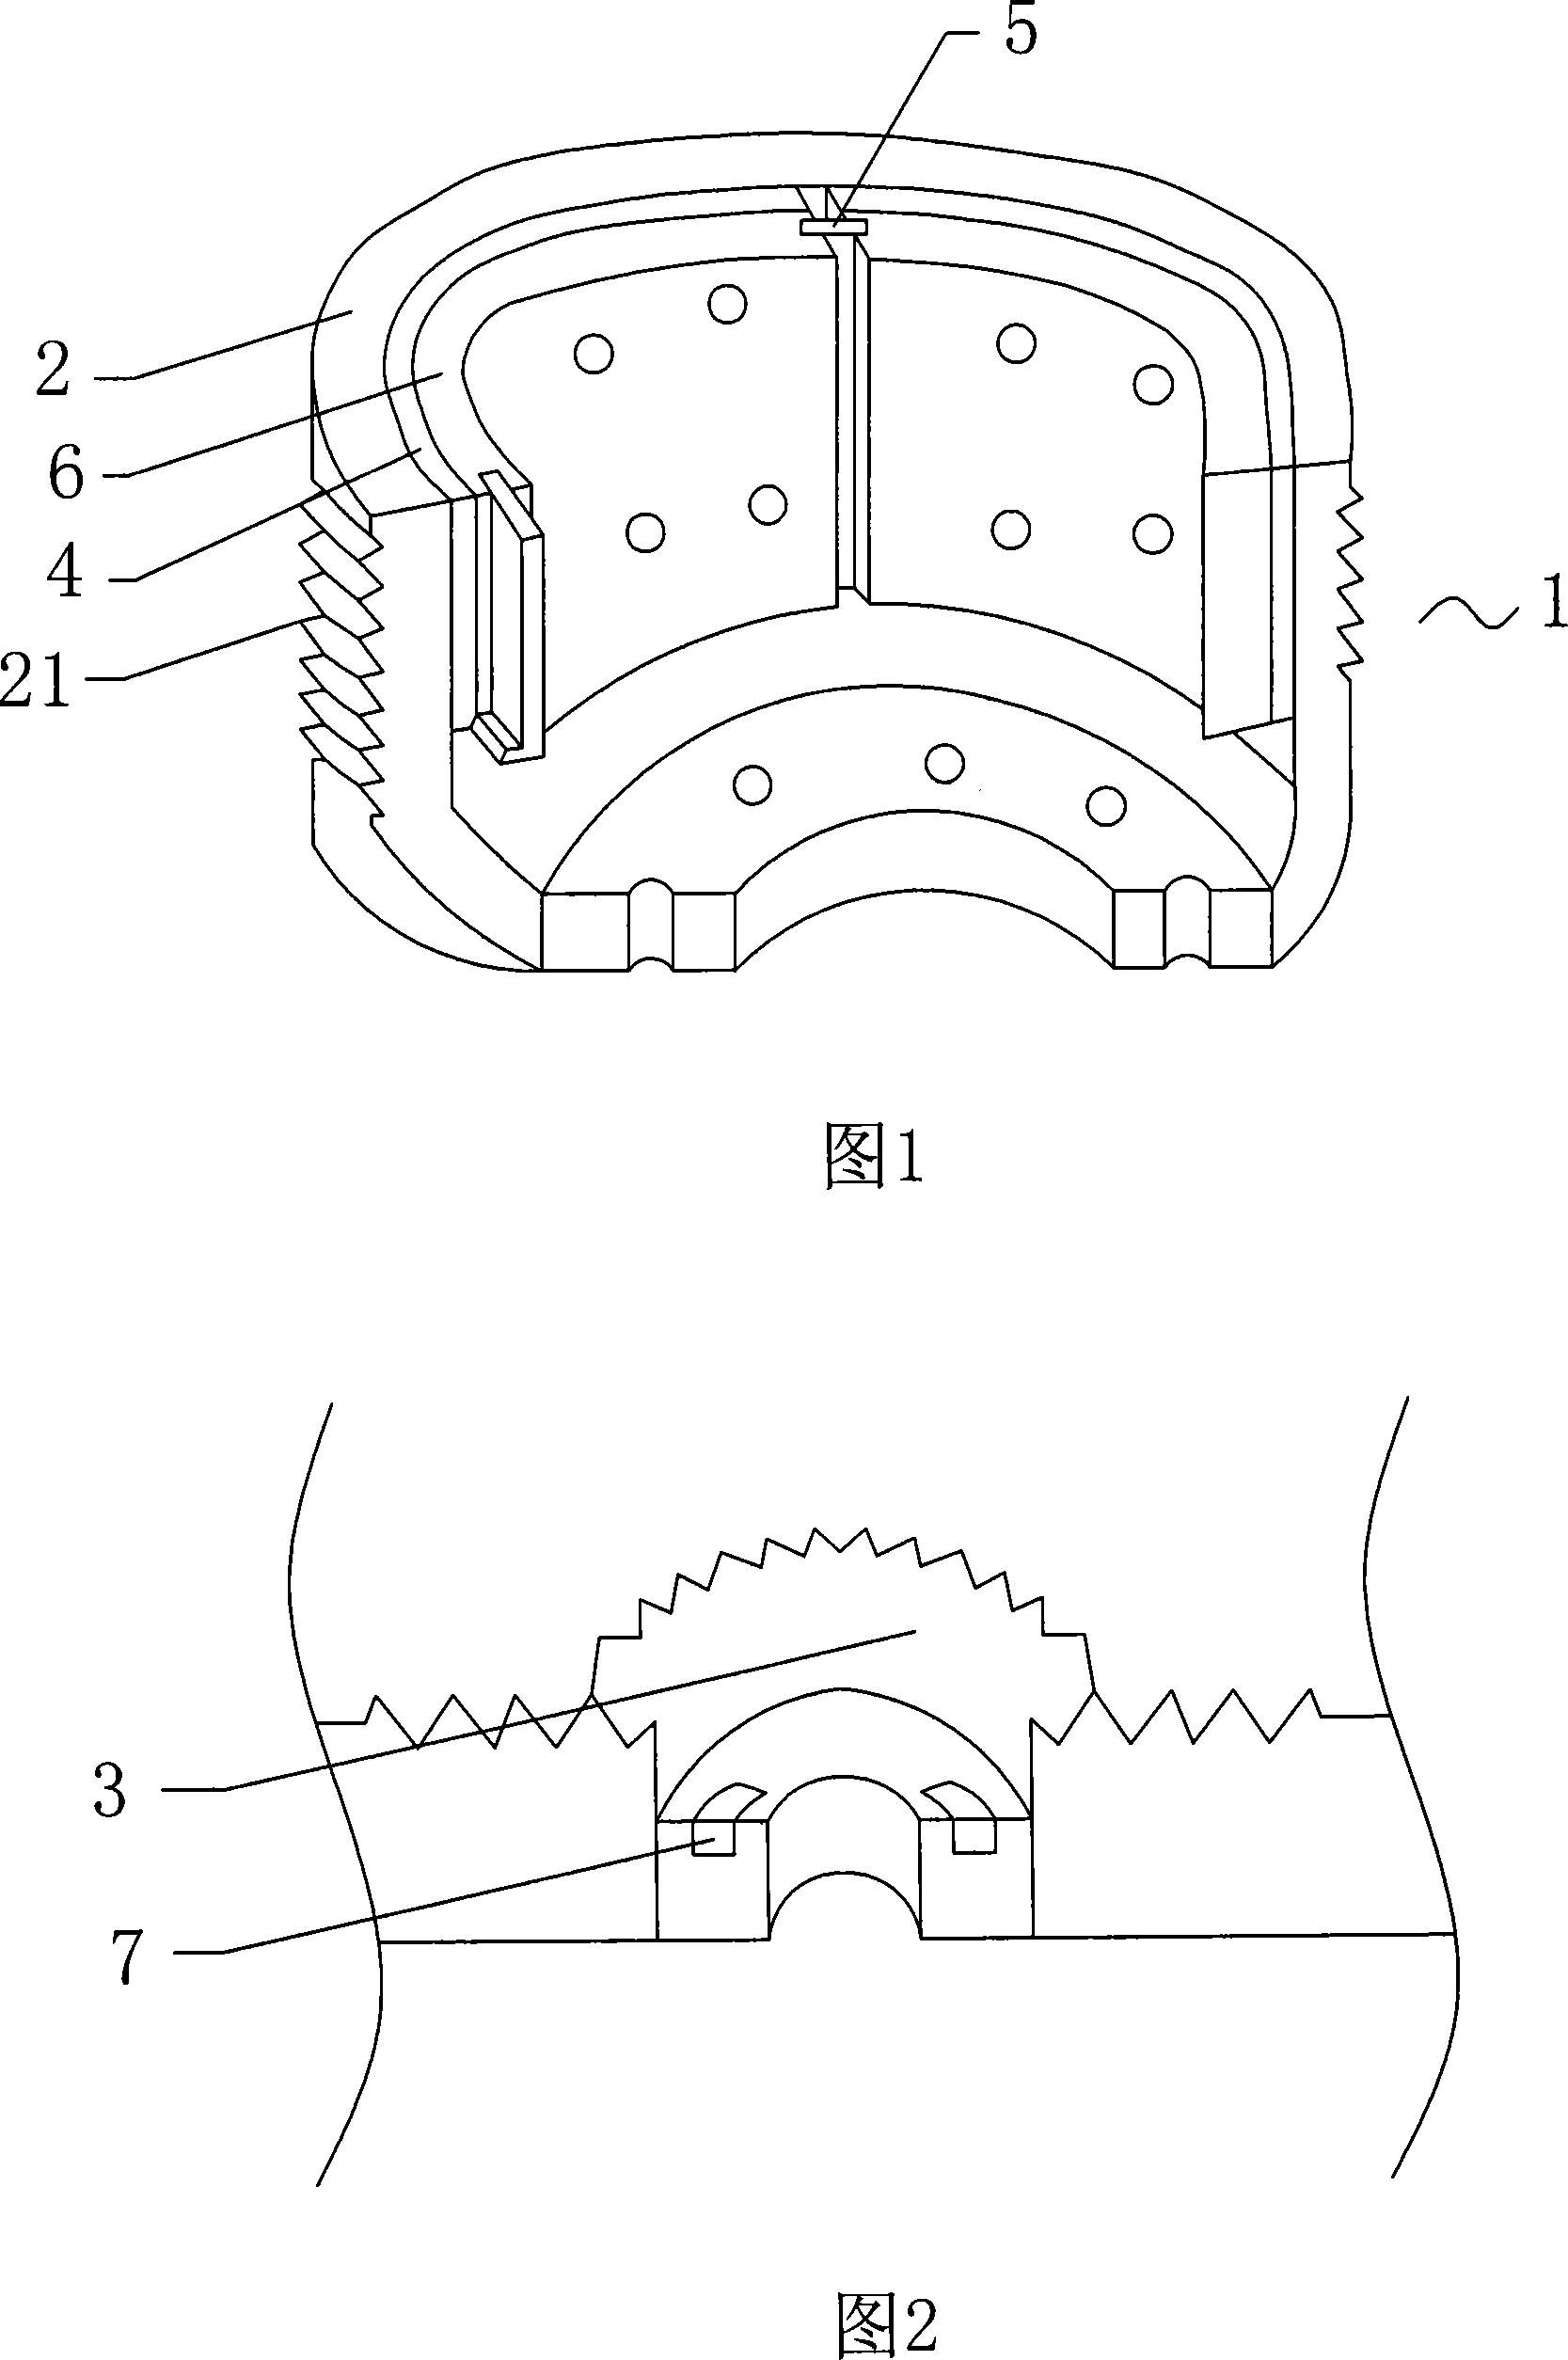 Vehicle braking hub